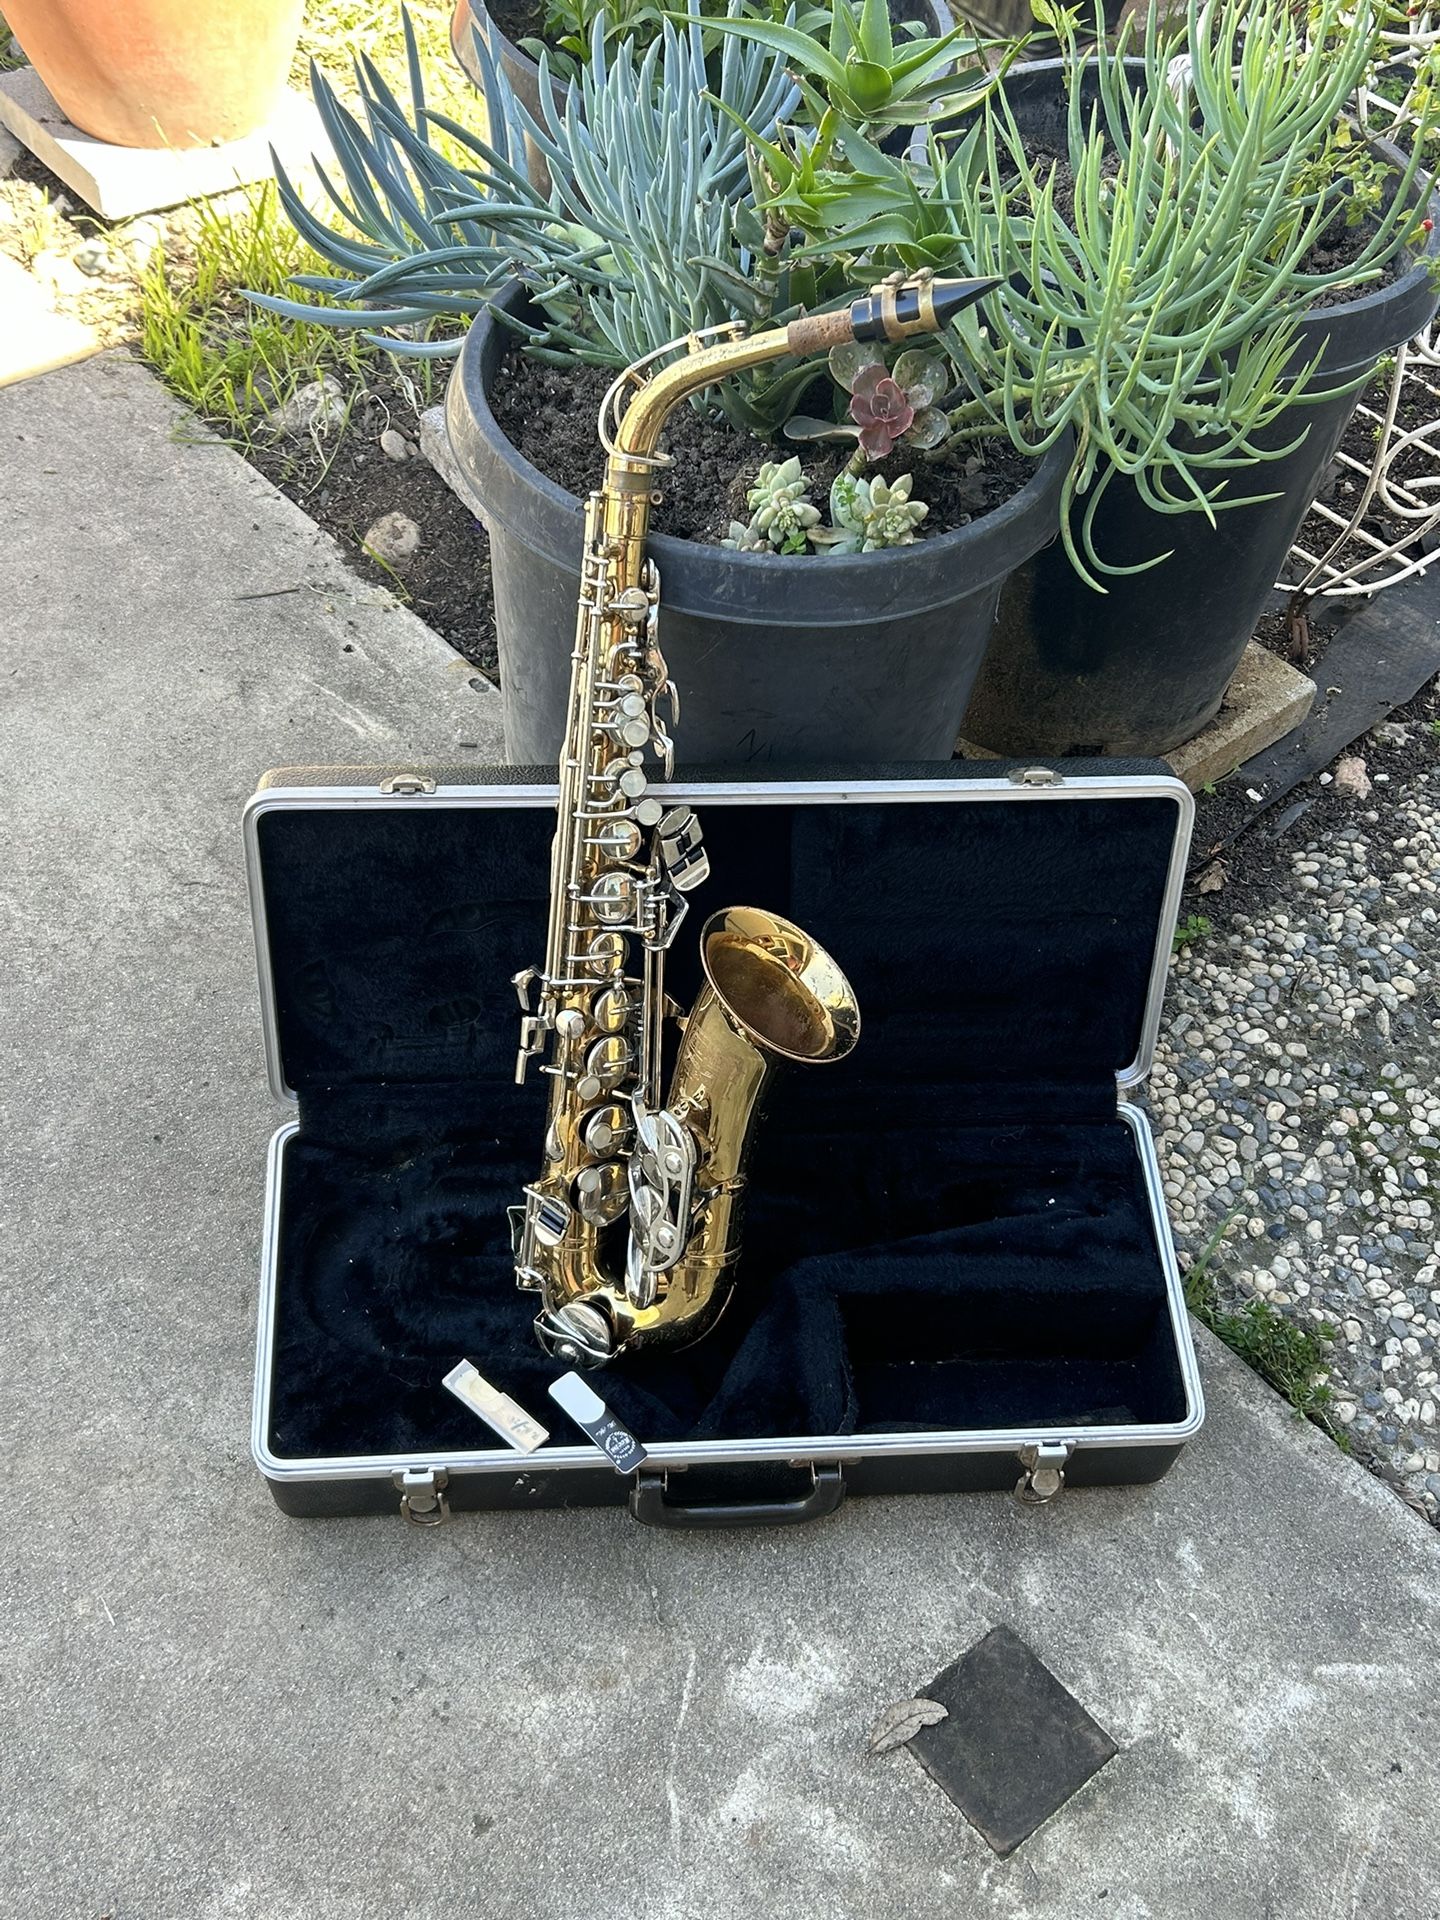 bundy selmer usa alto saxophone 🎷 